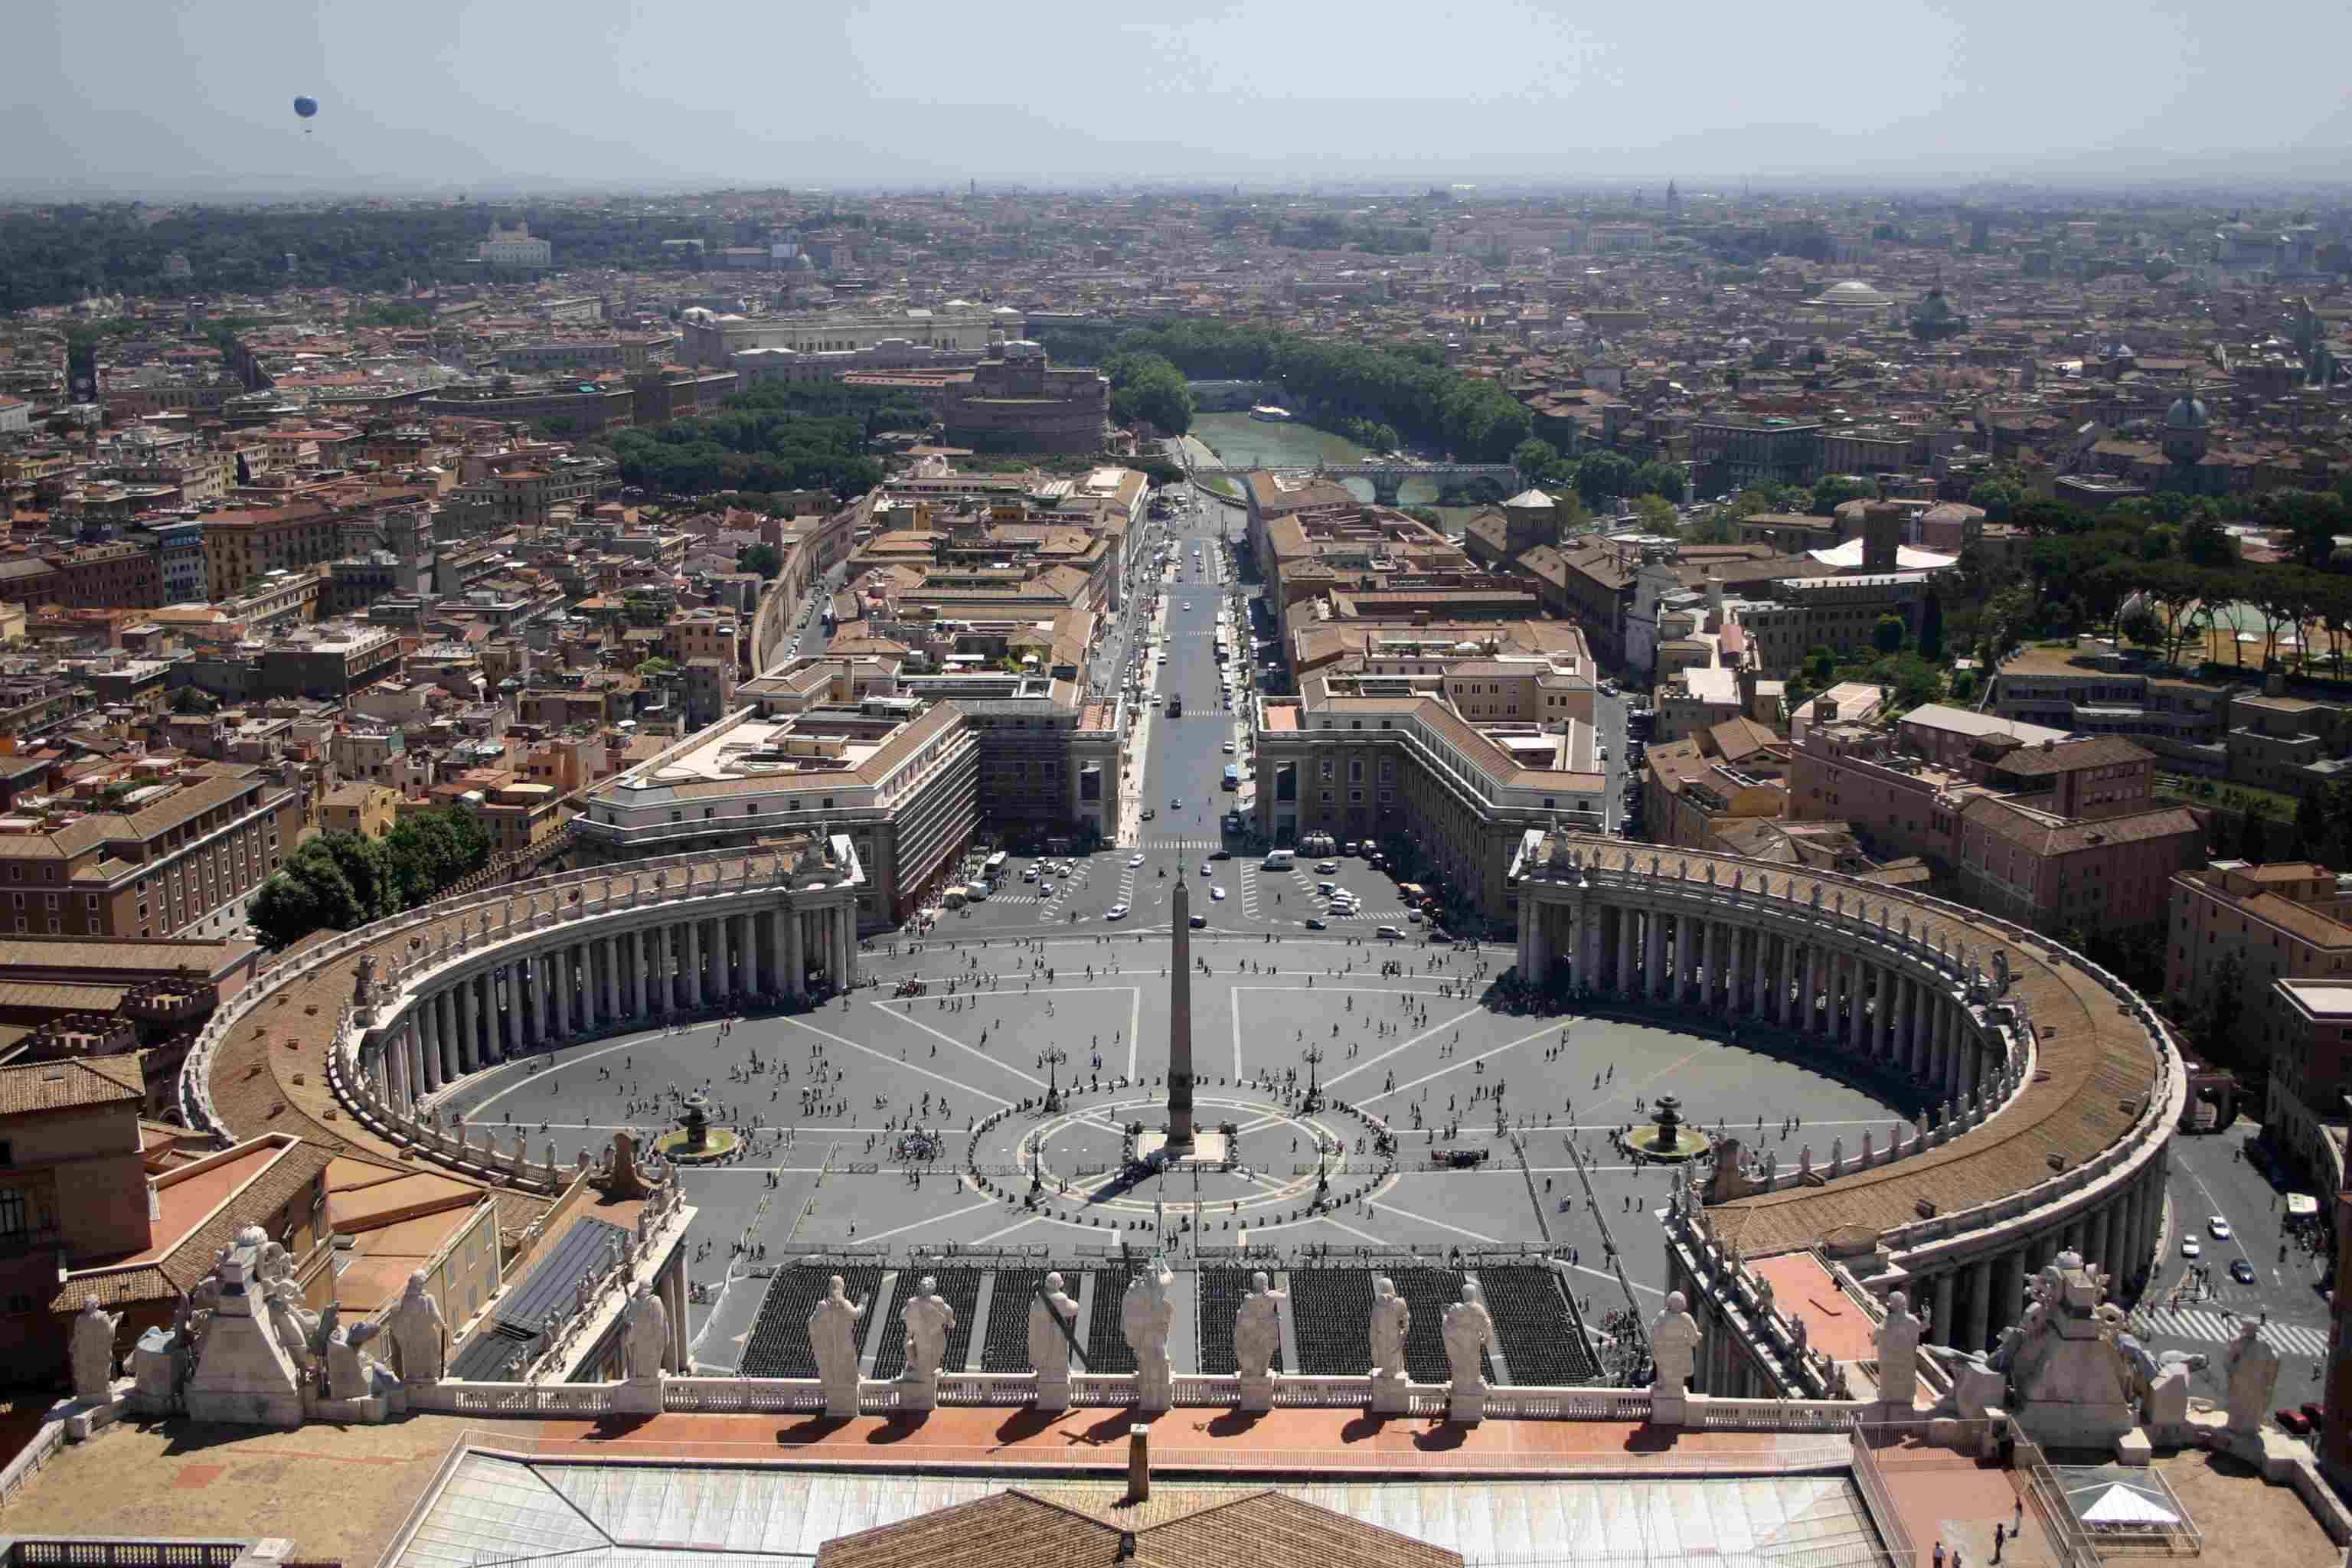 Vatikan Der Vatikan ist der kleinste Staat der Welt. Er liegt innerhalb der Stadtgrenzen Roms. Die offizielle Bezeichnung ist Stadt-Staat Vatikan (Stato della Citta del Vaticano).